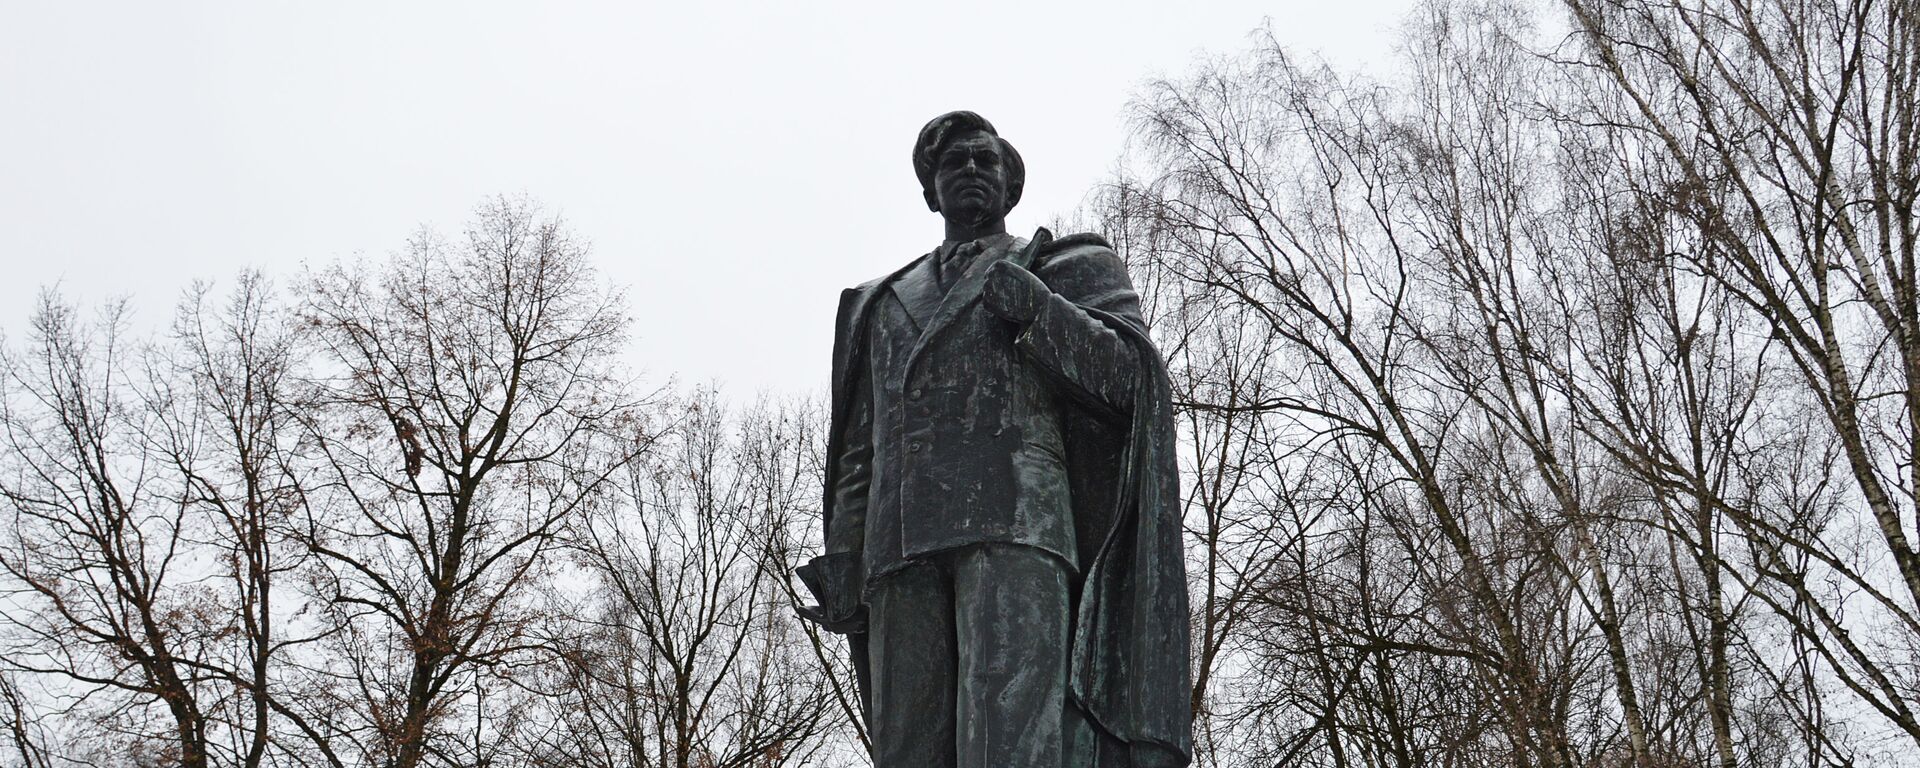 Памятник Пятрасу Цвирке в Вильнюсе, архивное фото - Sputnik Lietuva, 1920, 26.10.2021